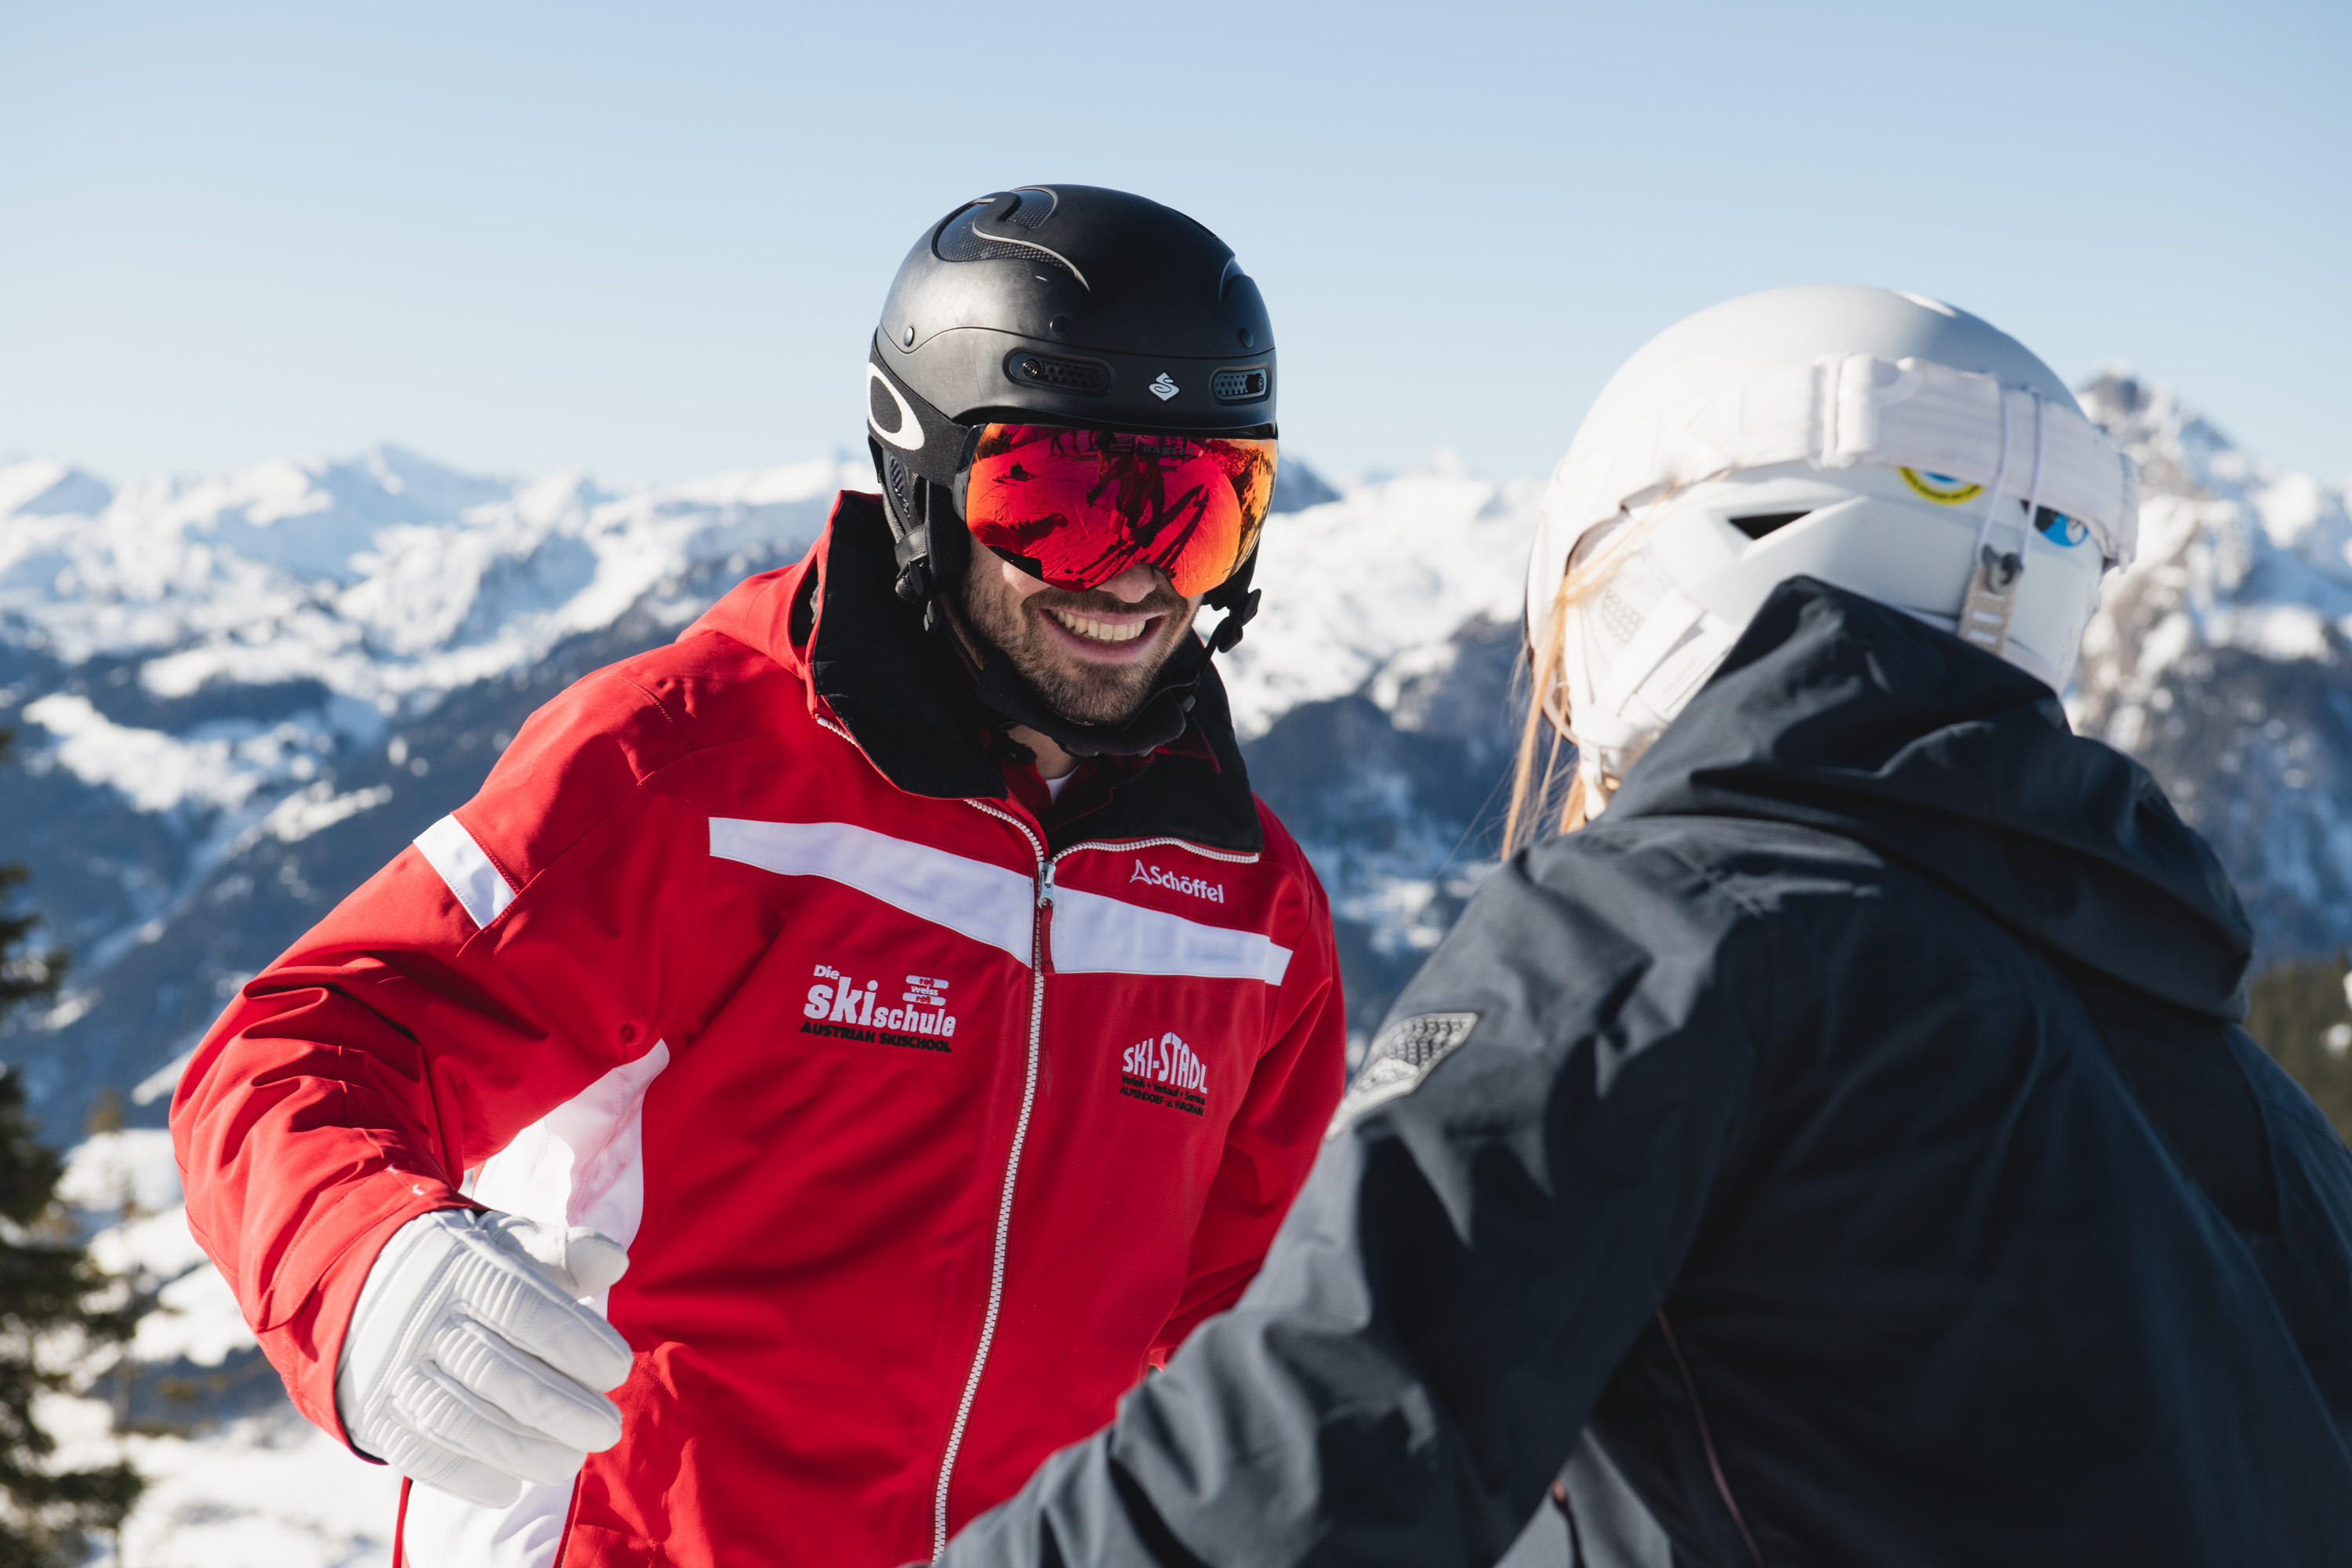 Bilder Alpendorf Skischule Rot Weiß Rot